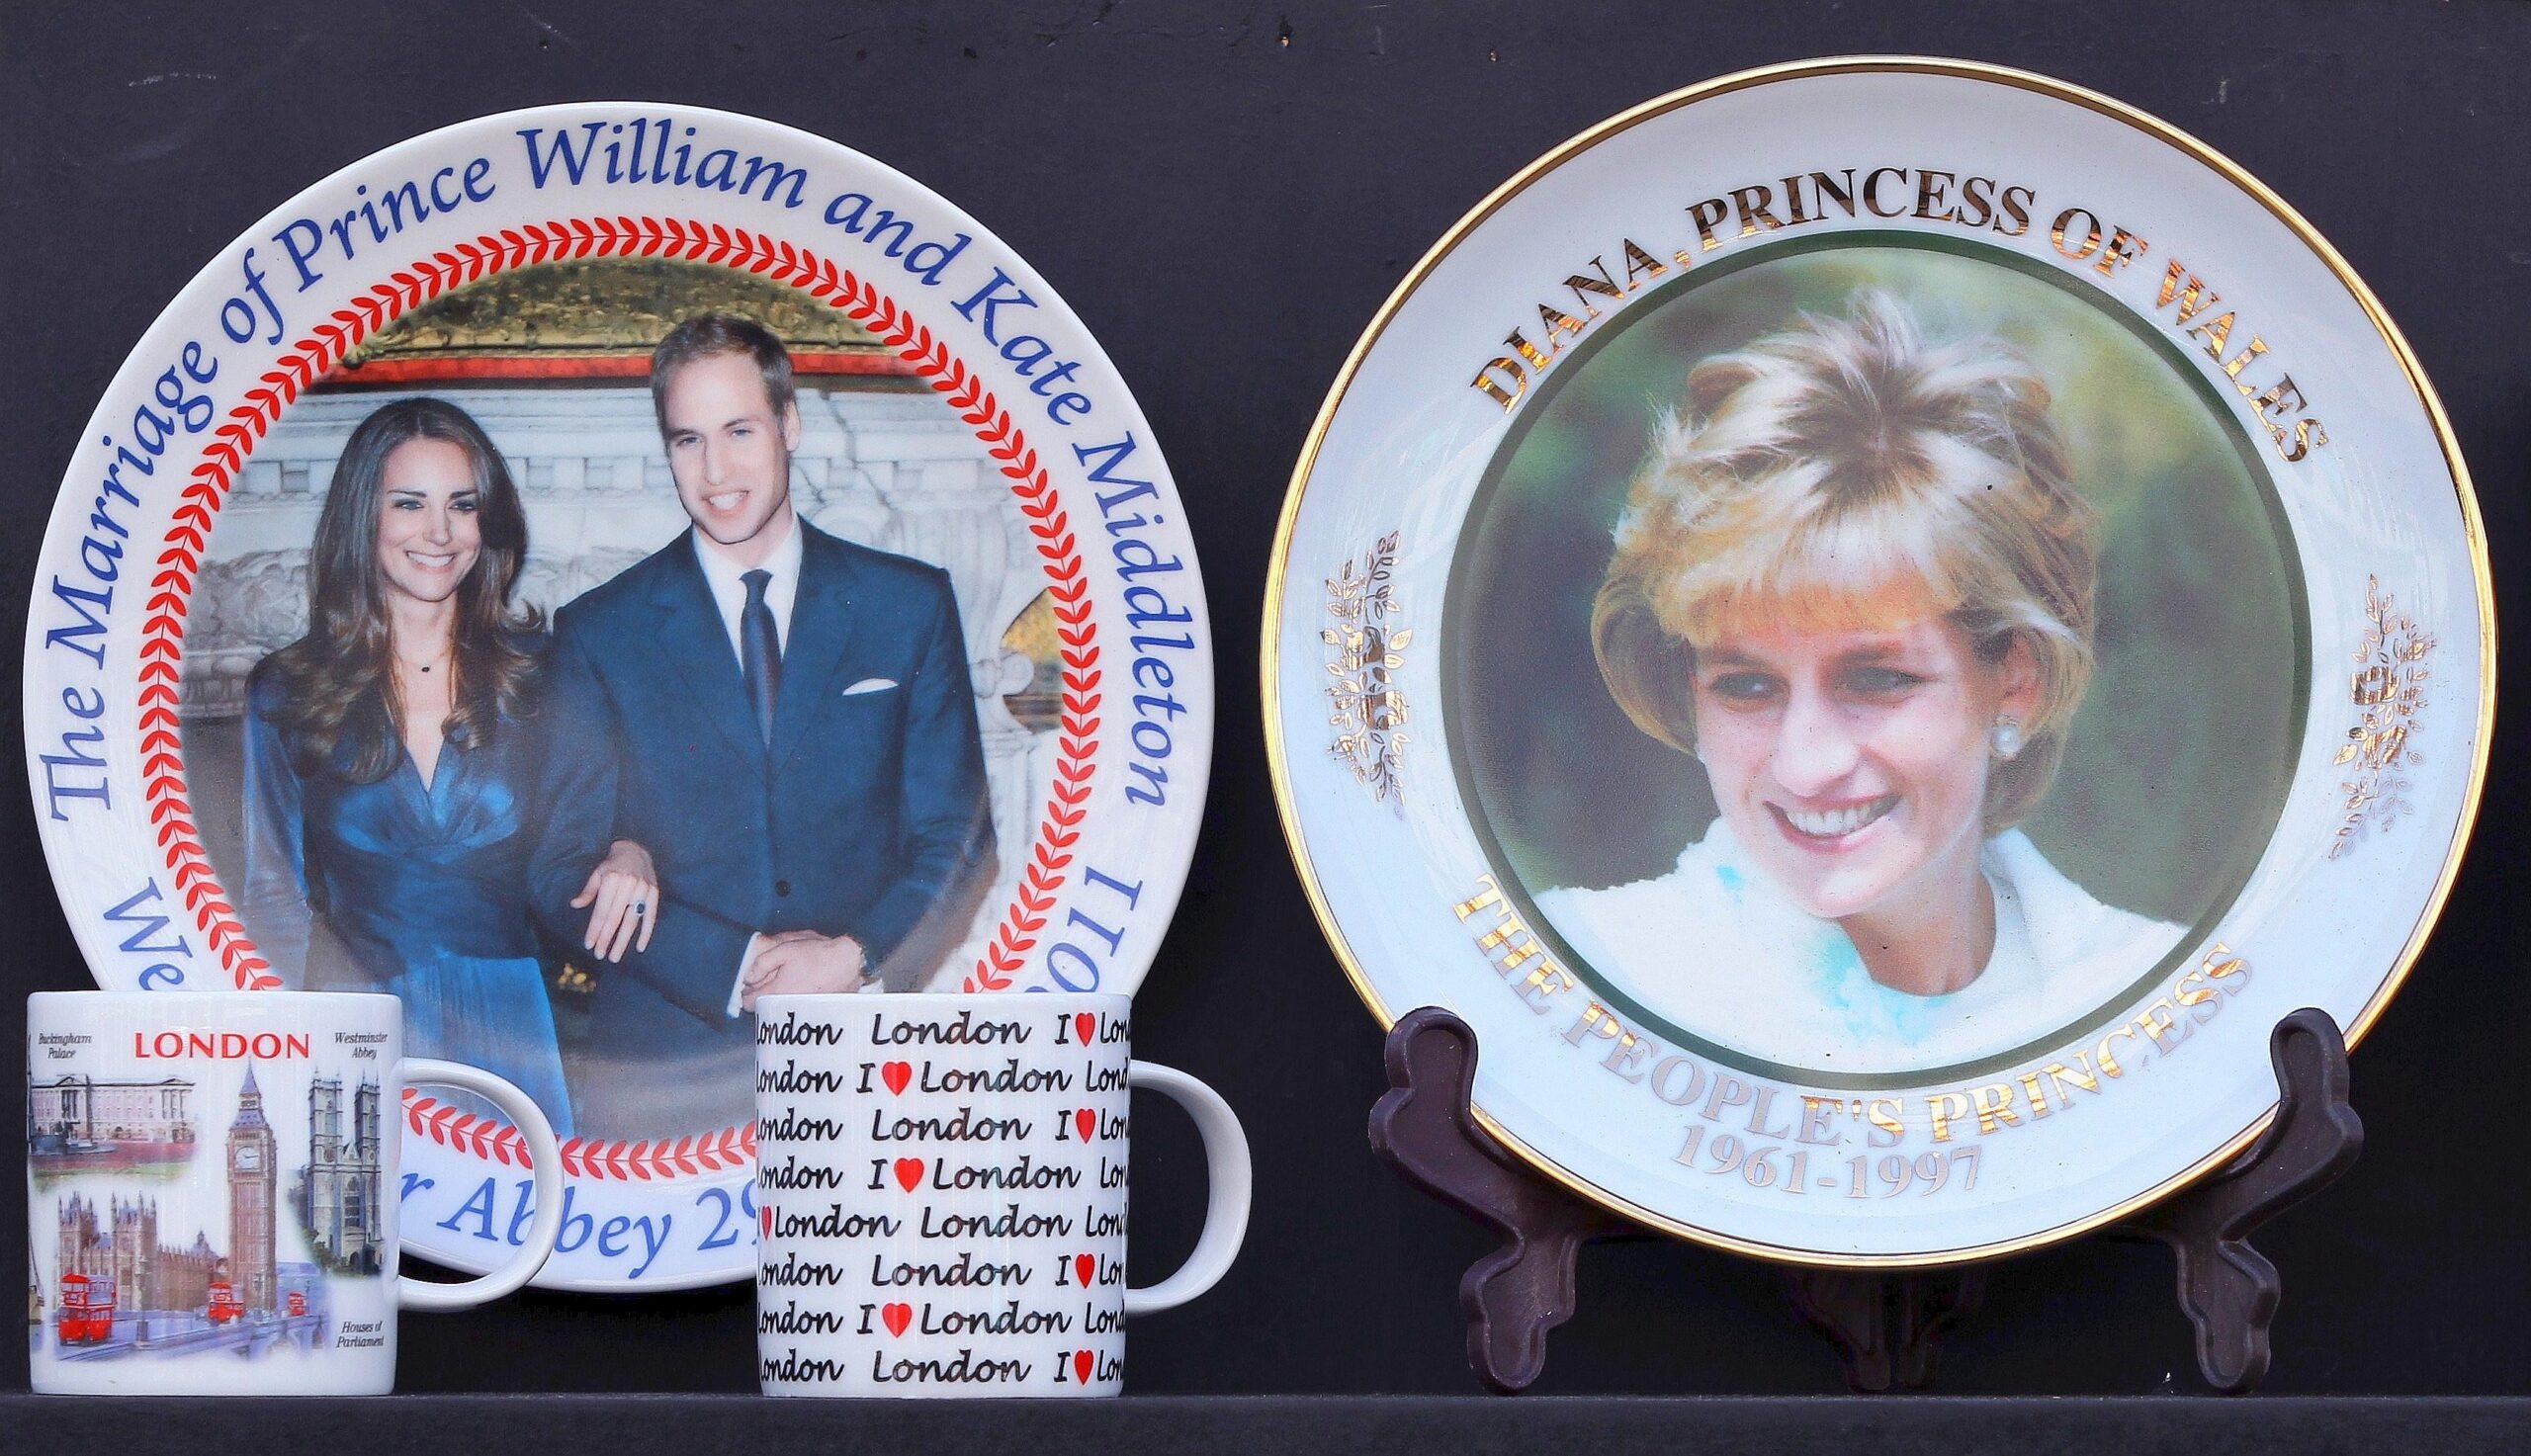 ...bieten noch immer Diana-Devotionalien an. Die stehen jetzt neben Kate-und-William-Tellern - und sind hoch im Kurs. (mit Material von dapd)